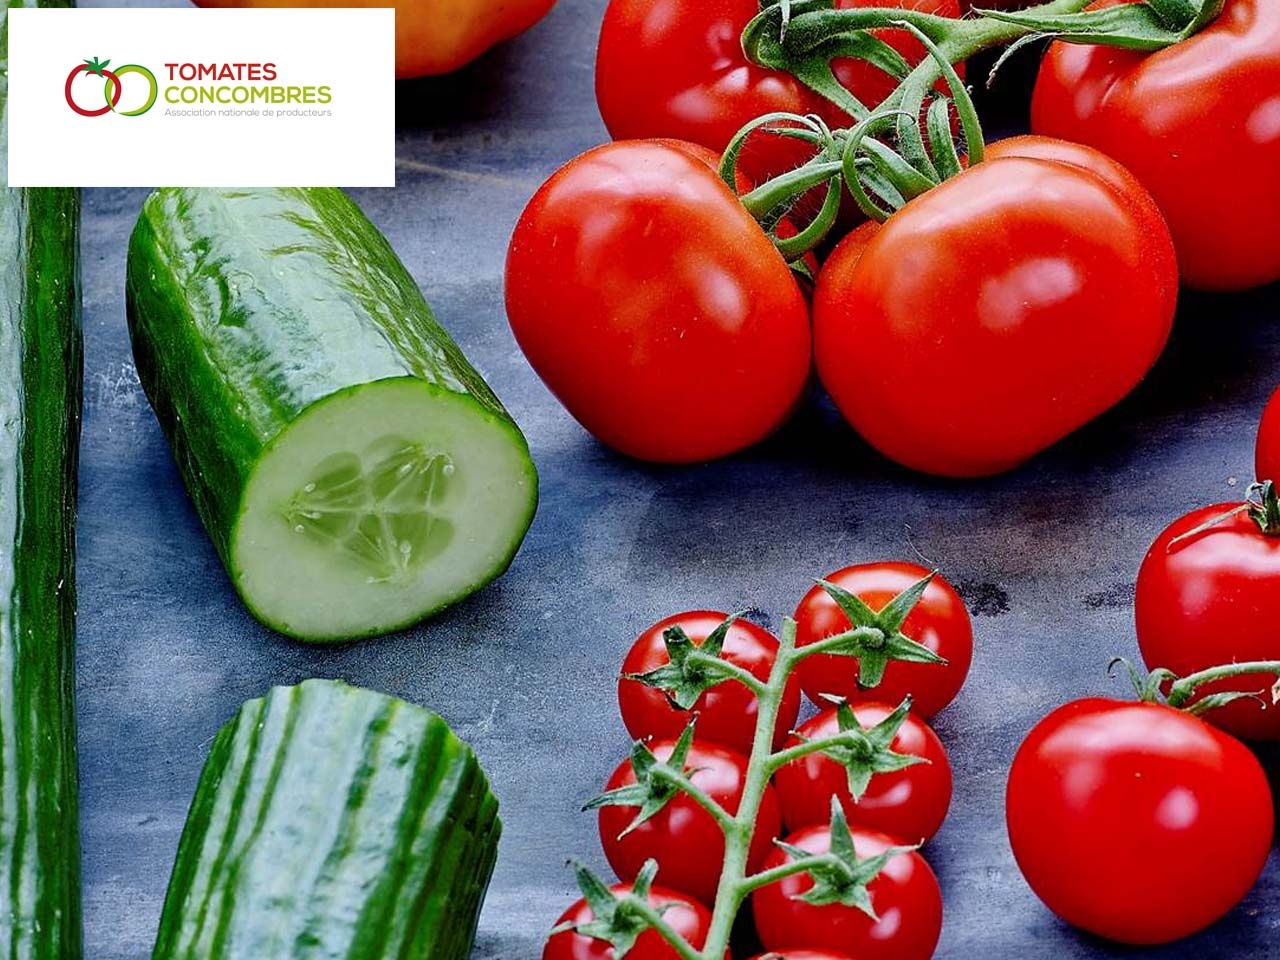 L’Association Nationale de Producteurs prône le lancement de saison pour les Tomates, Concombres, Poivrons et Aubergines de France !